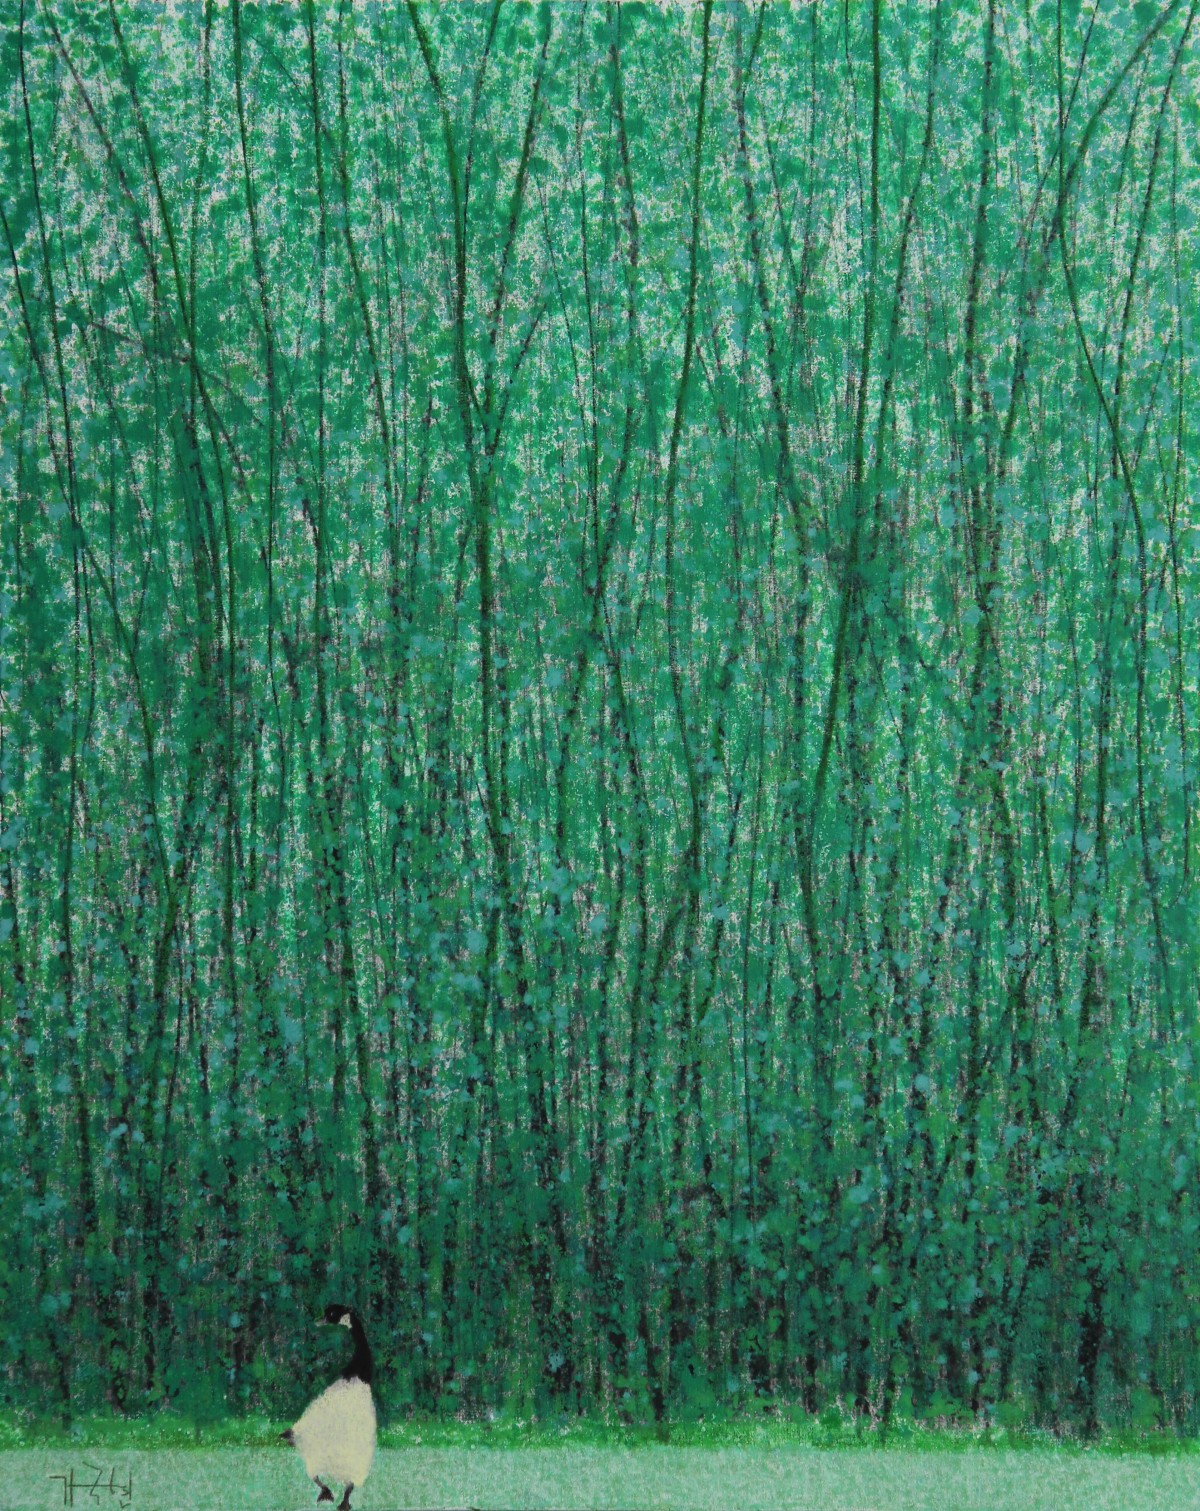 가국현, 감성풍경, Oil on canvas, 91x73cm, 2021